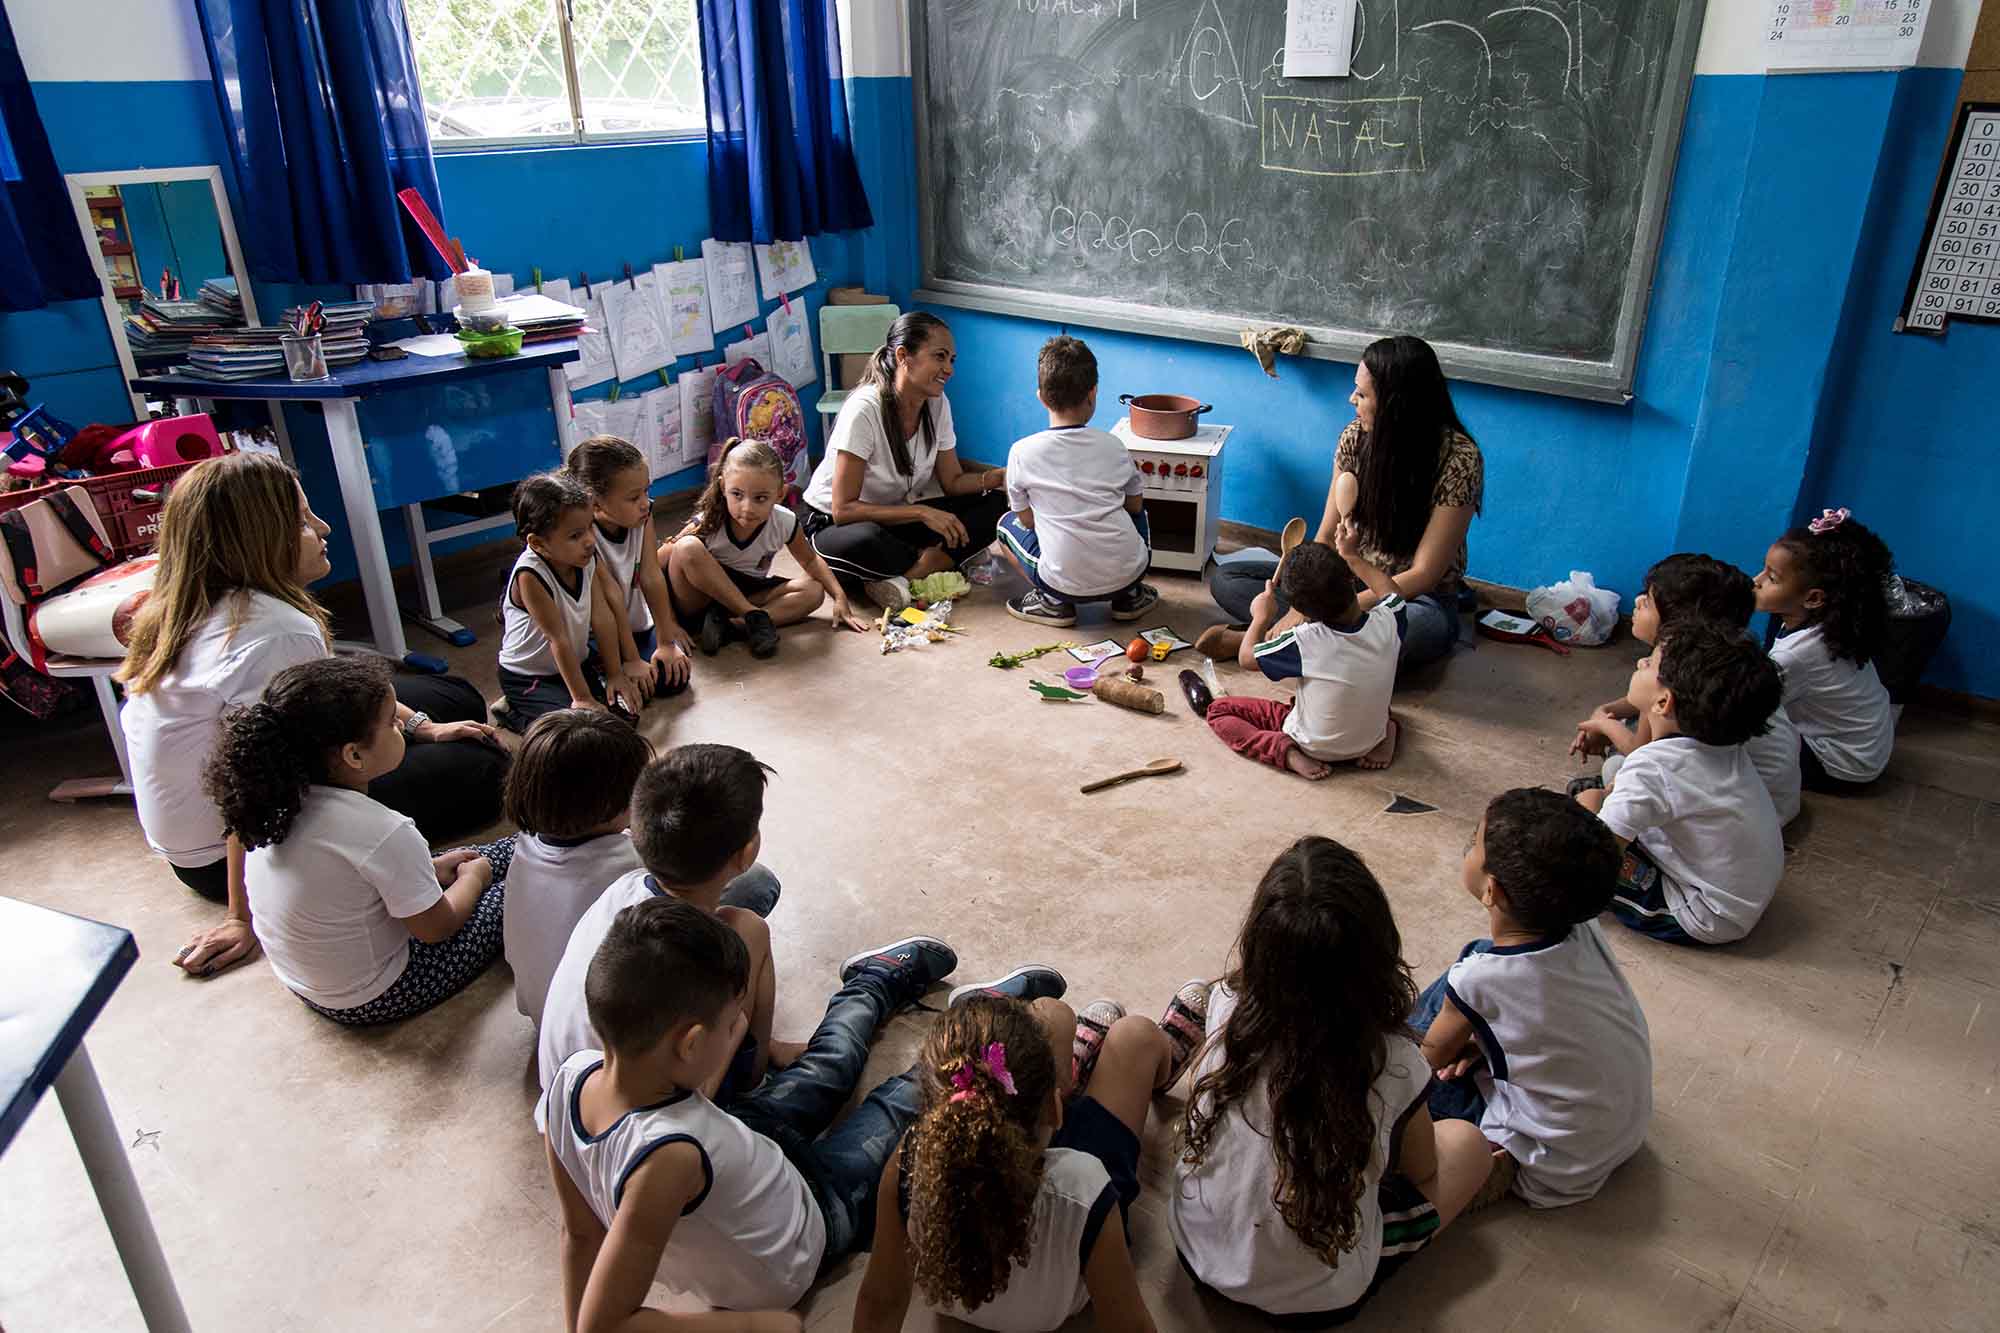 Em sala de aula, estudantes em roda sentados no chão observam aluno manuseando fogão musical, enquanto duas professoras supervisionam a atividade. Fim da descrição.